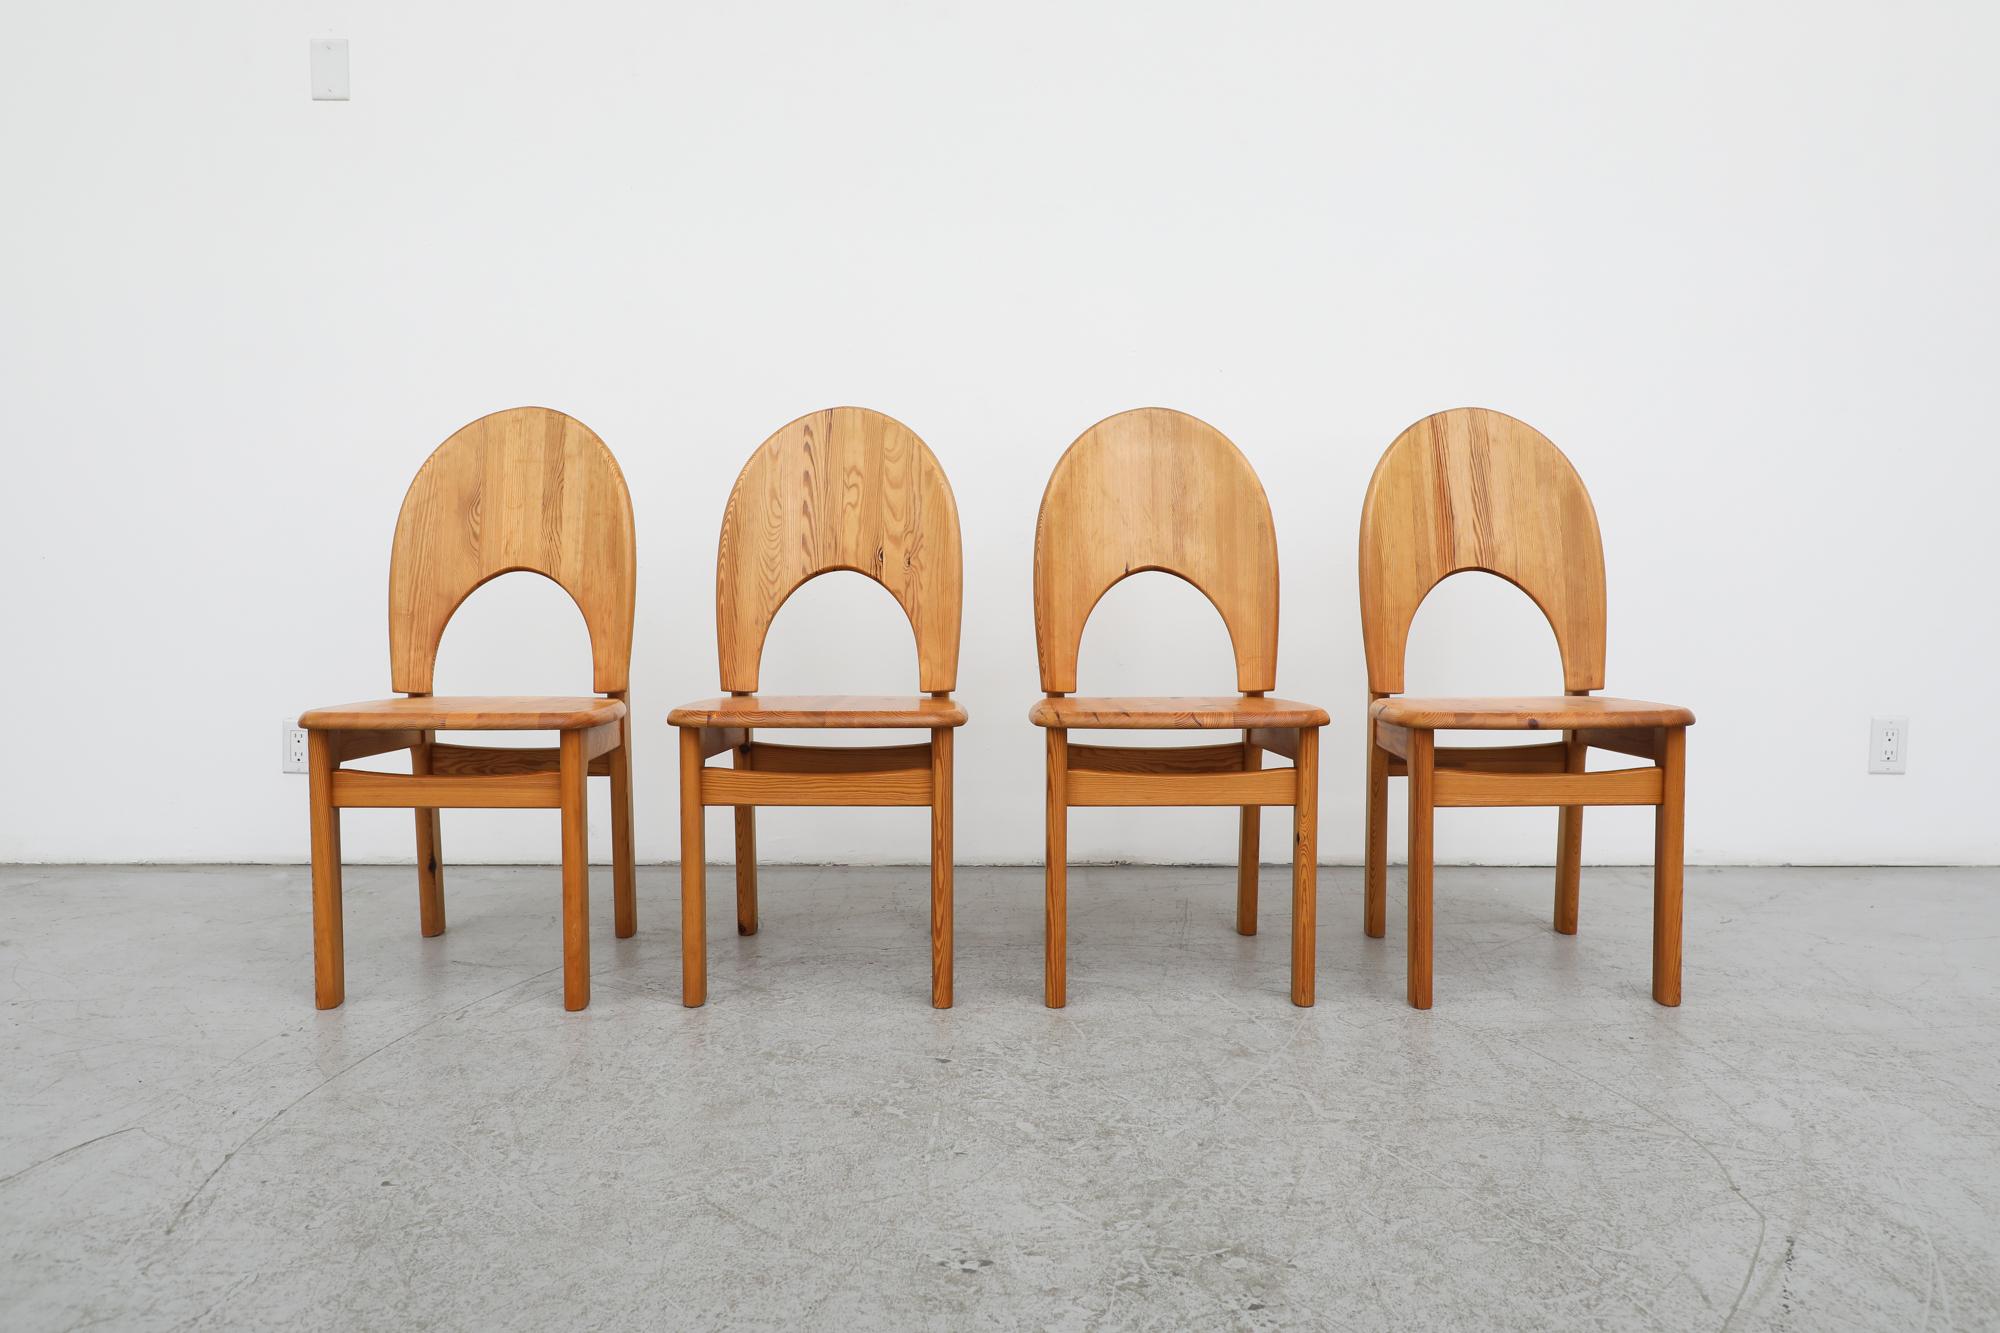 Schöner Mid-Century-Satz von 4 von Rainer Daumiller entworfenen Esstischstühlen aus geschwungener Kiefer für den dänischen Nachkriegsmöbelhersteller Hirtshals Savvaerk. Die Stühle weisen eine attraktive Holzmaserung auf, die durch die eleganten